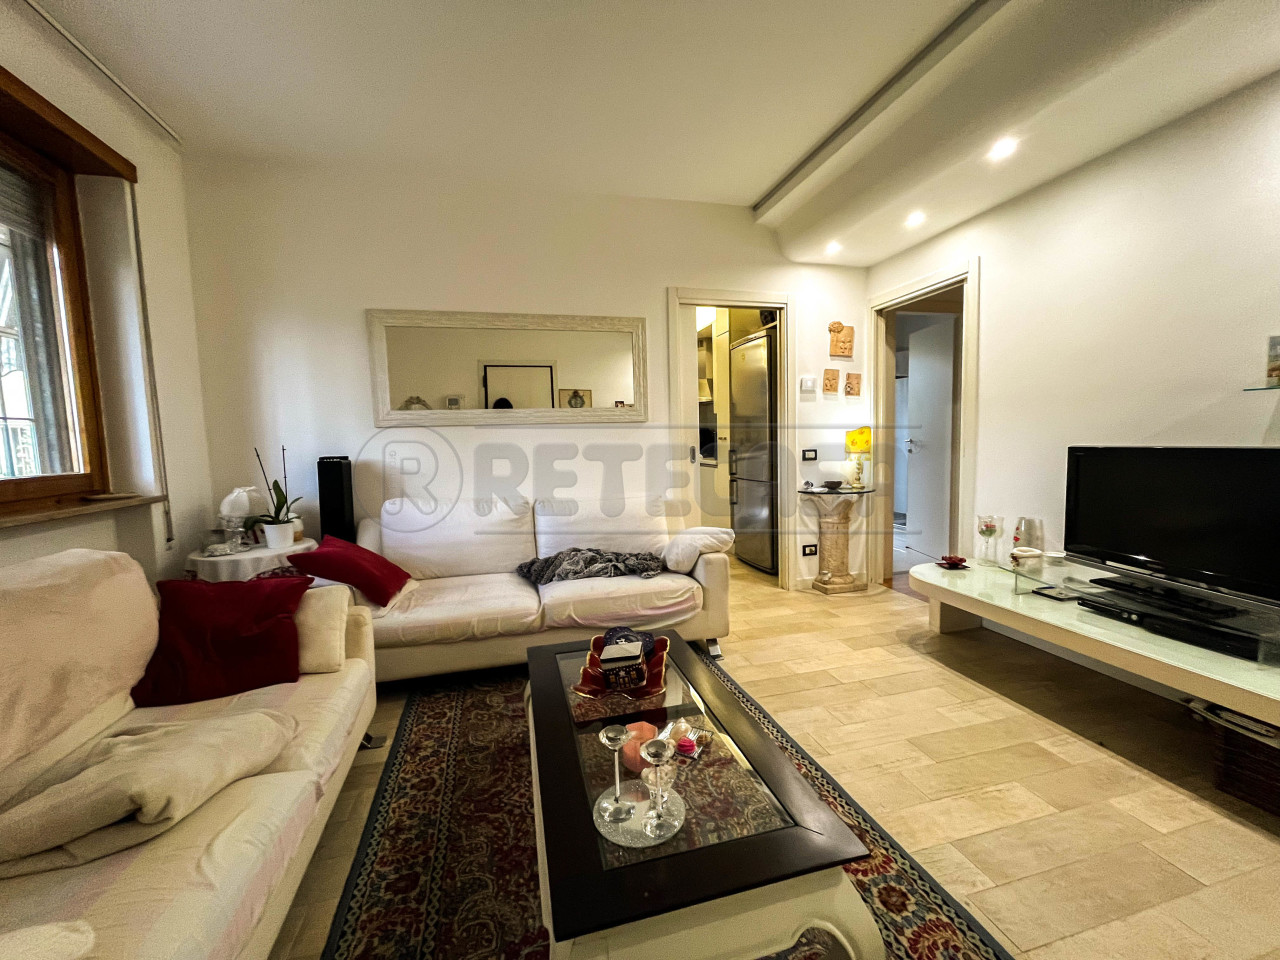 Appartamento in vendita a Creazzo, 6 locali, prezzo € 168.000 | PortaleAgenzieImmobiliari.it